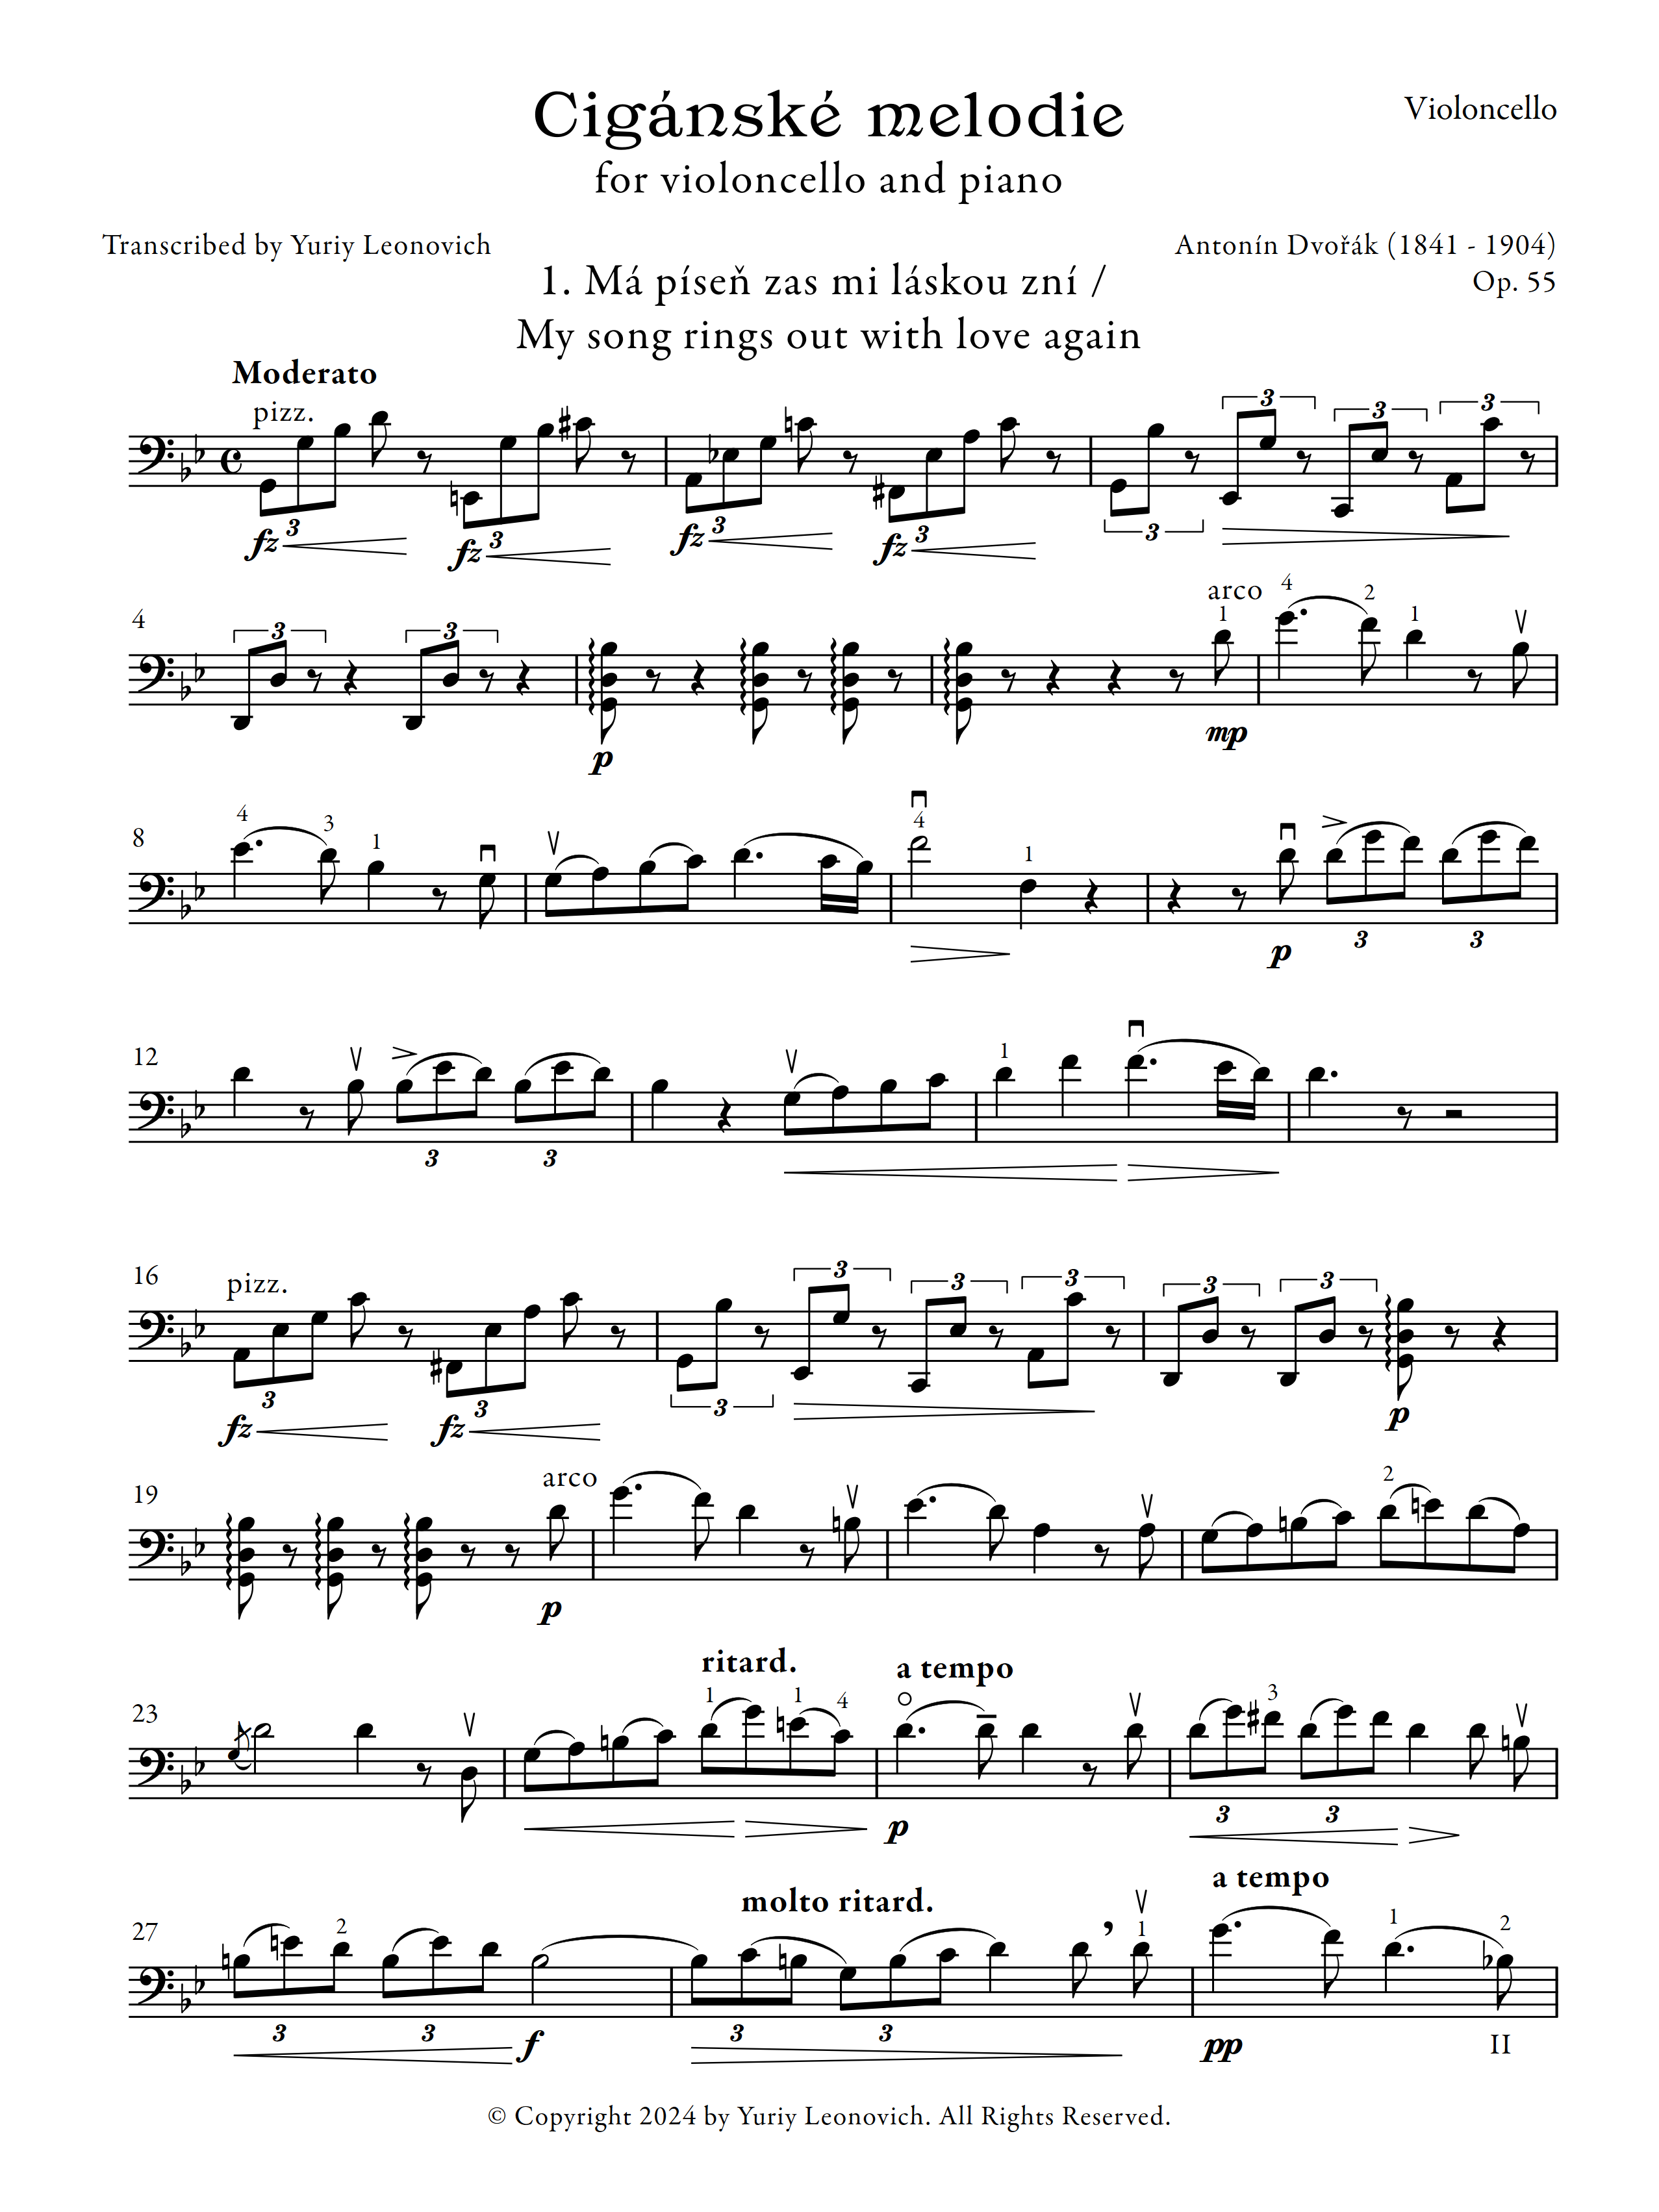 Dvořák - Cigánské melodie (Gypsy Songs), Op. 55 (Transcribed for 